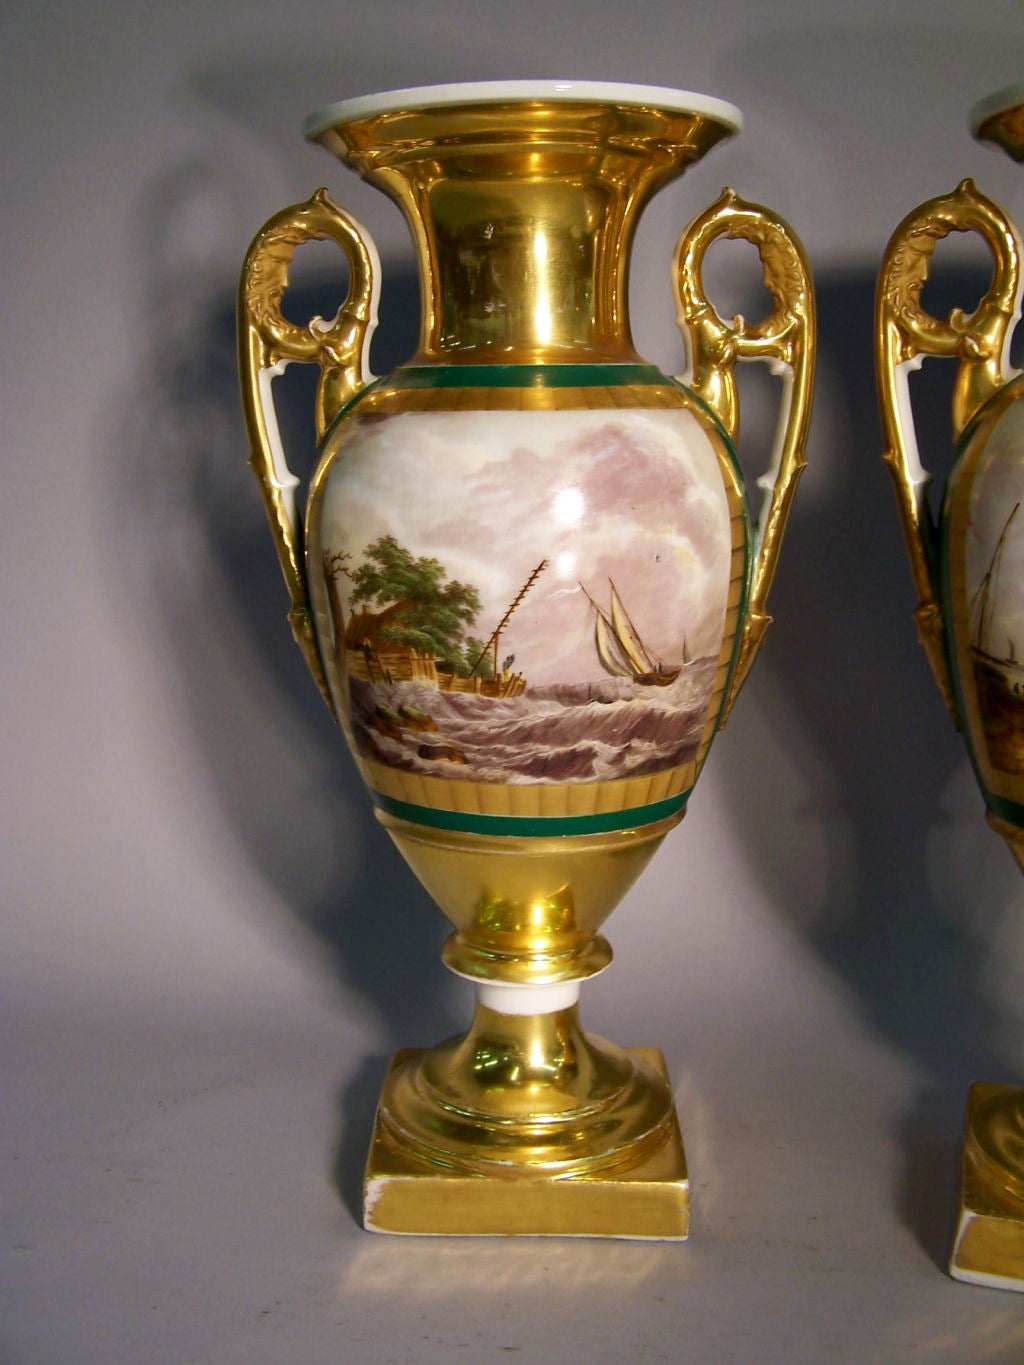 Une belle paire de vases en porcelaine de Paris sur des bases à piédestal, présentant des scènes de paysage dans des bordures dorées gravées à l'acide. Le corps de chaque vase avec un fond vert, au-dessus et en dessous avec un fond doré. Chaque vase